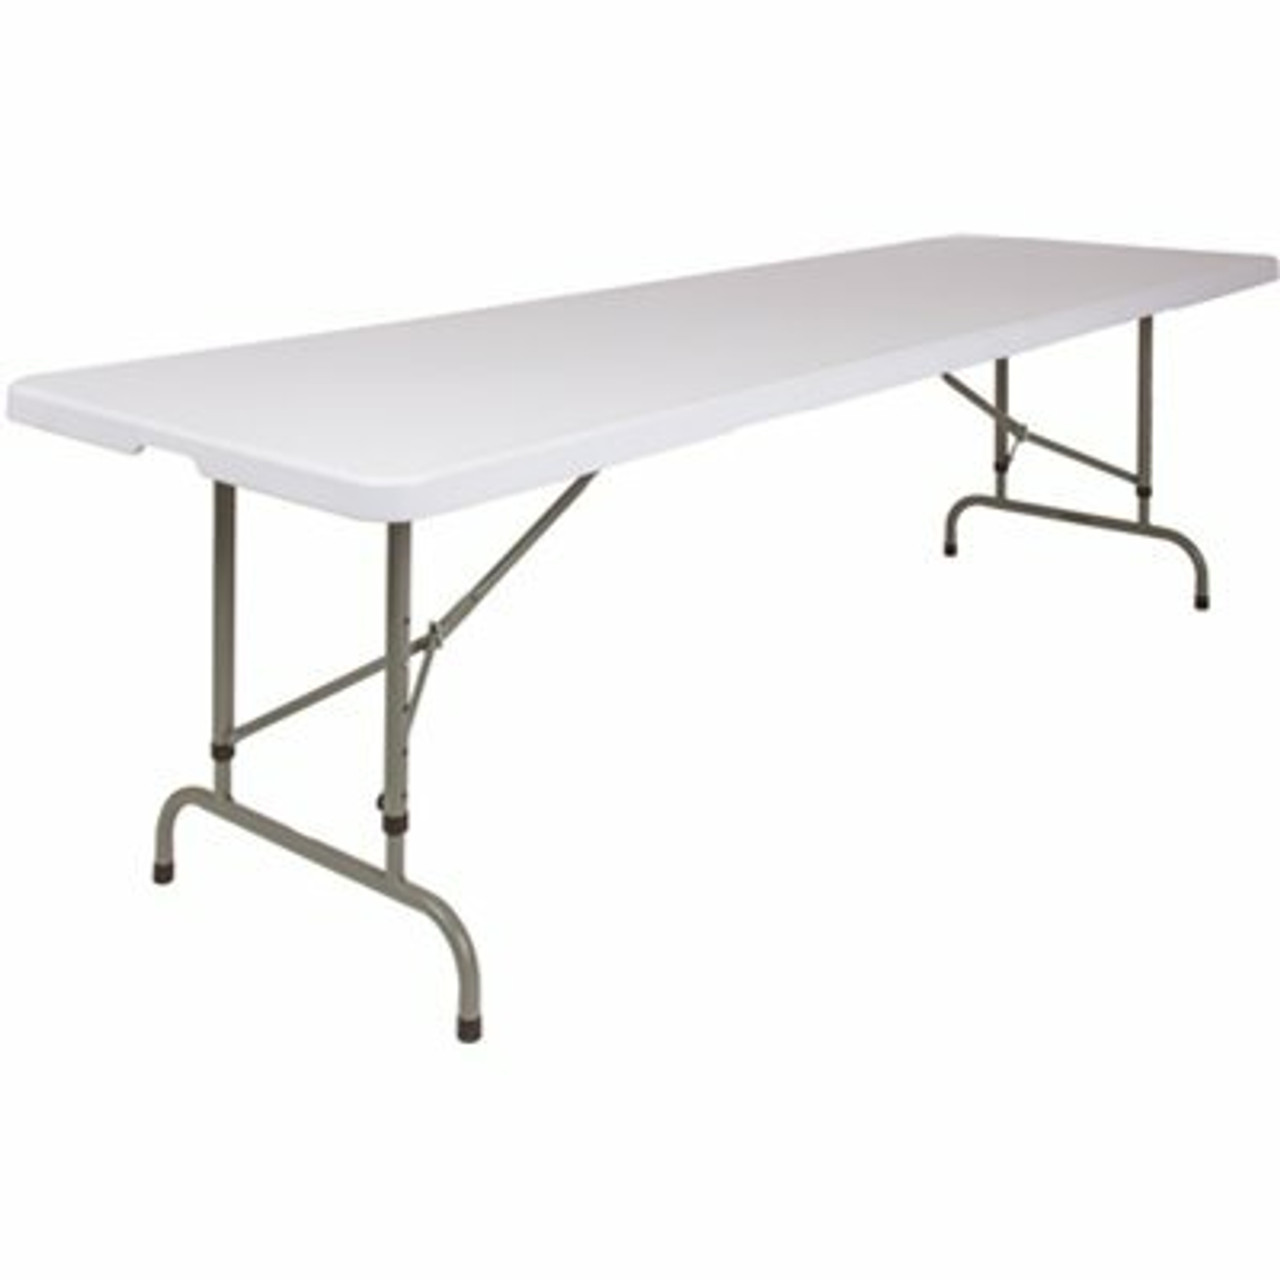 96 In. Granite White Plastic Tabletop Metal Frame Folding Table - 308685848